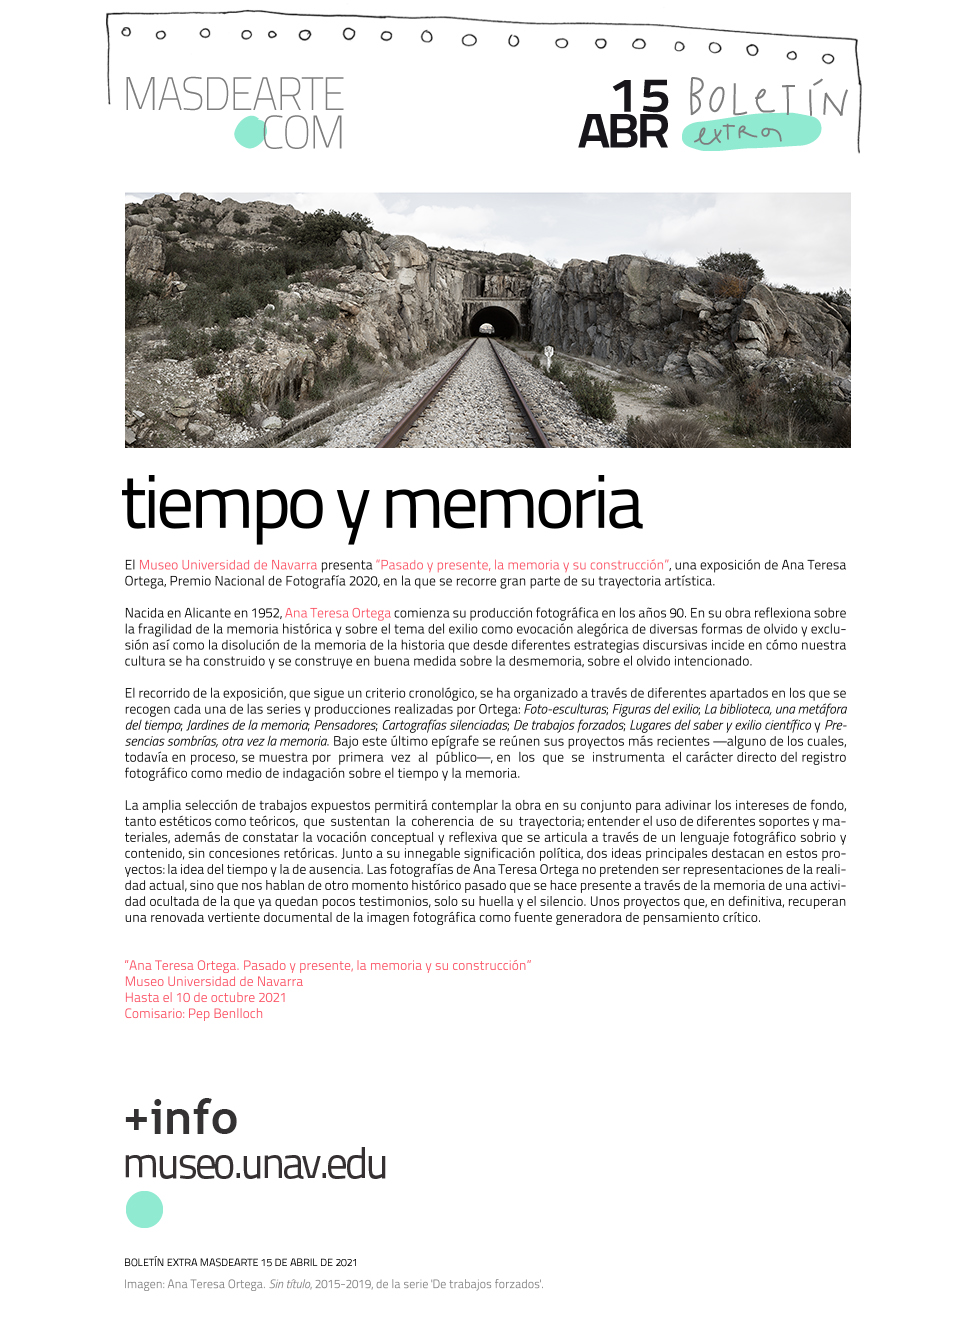 Extra masdearte: el Museo Universidad de Navarra recorre la producción
 de Ana Teresa Ortega